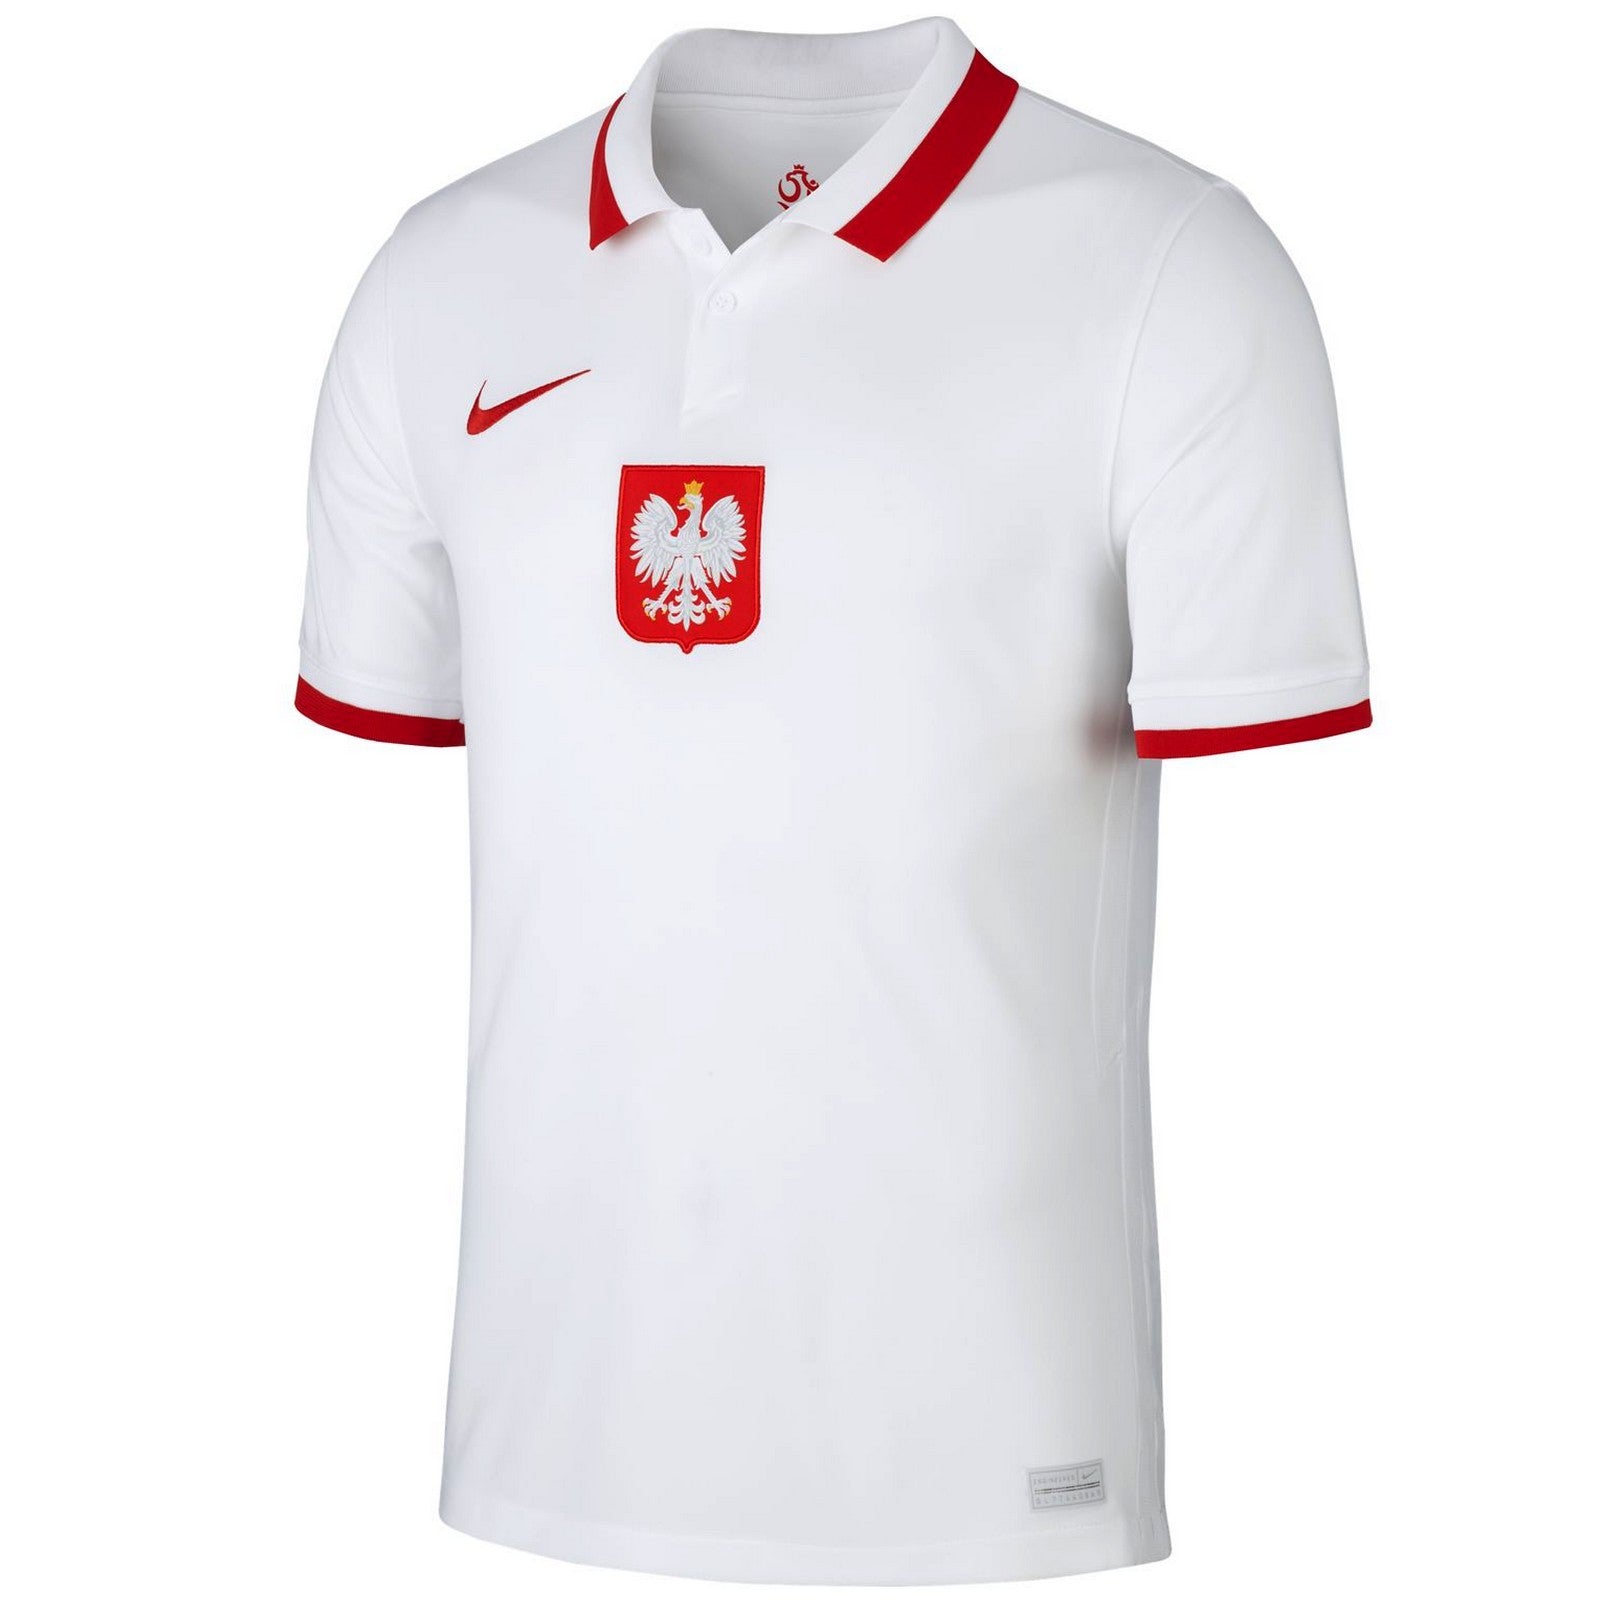 Sencillez marca conjunto Poland national team Home soccer jersey 2020/21 - Nike –  SoccerTracksuits.com